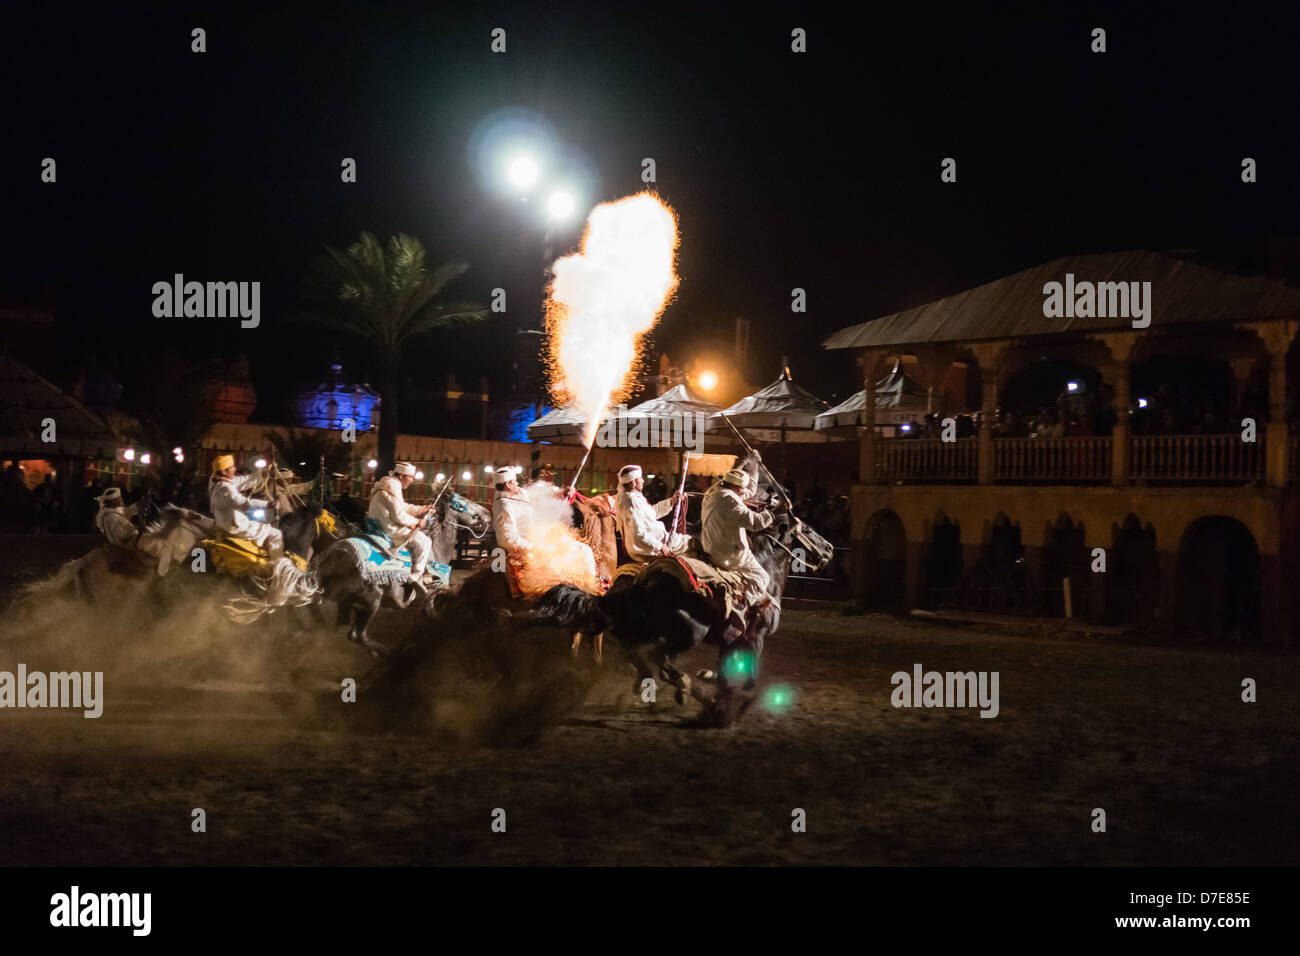 Marokko, Marrakesch - Fantasia Berber Fort Abendessen und Unterhaltung, touristische Spektakel in der Arena. Stockfoto